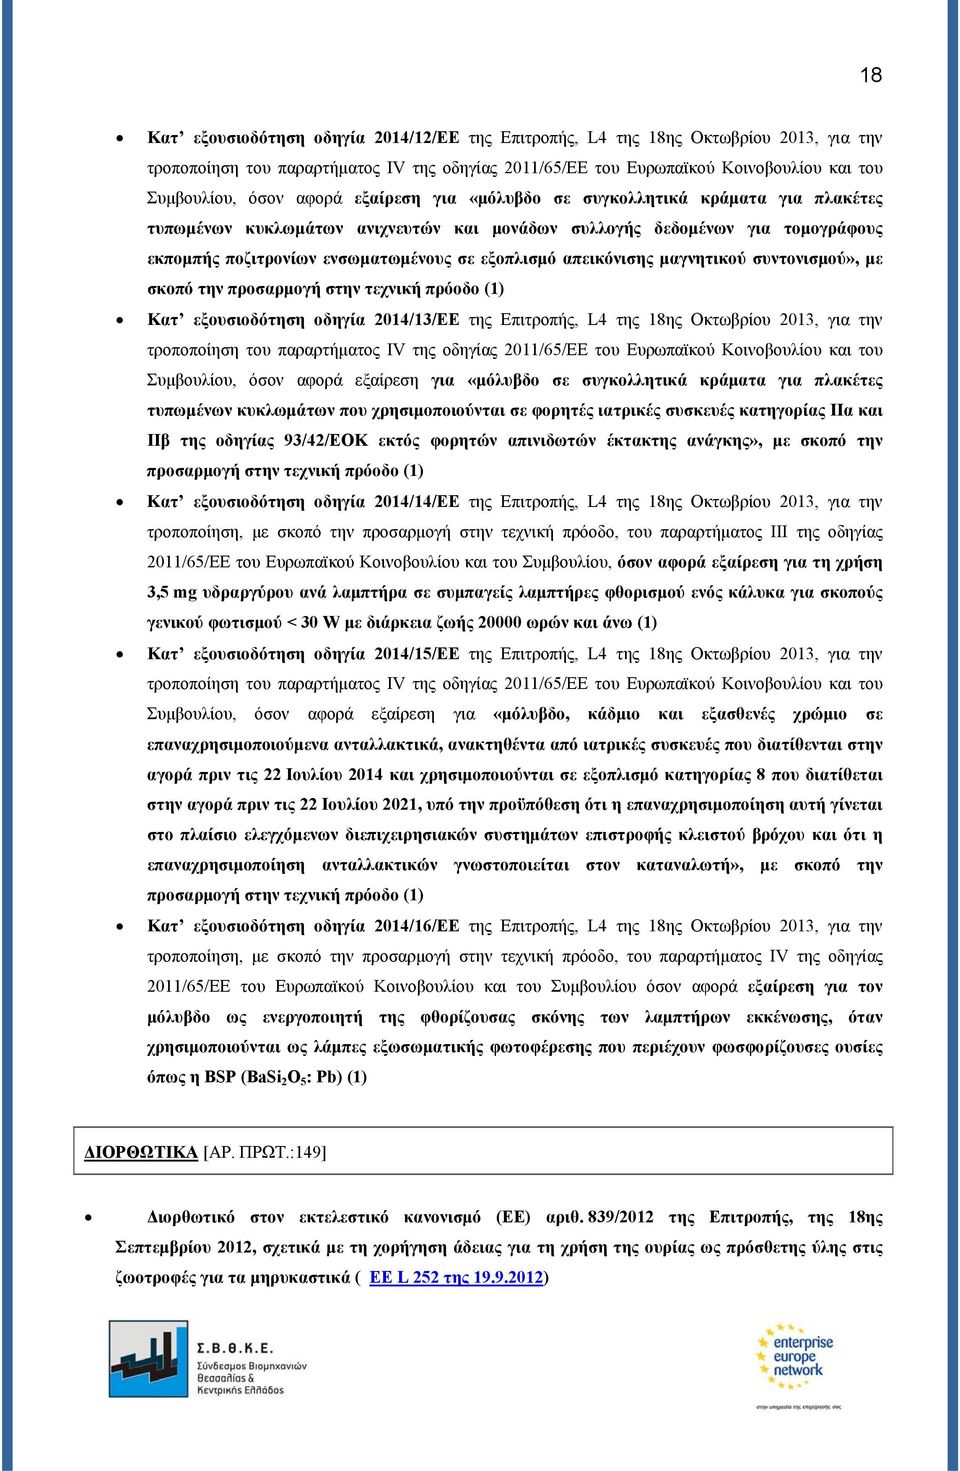 απεικόνισης μαγνητικού συντονισμού», με σκοπό την προσαρμογή στην τεχνική πρόοδο (1) Κατ εξουσιοδότηση οδηγία 2014/13/ΕΕ της Επιτροπής, L4 της 18ης Οκτωβρίου 2013, για την τροποποίηση του